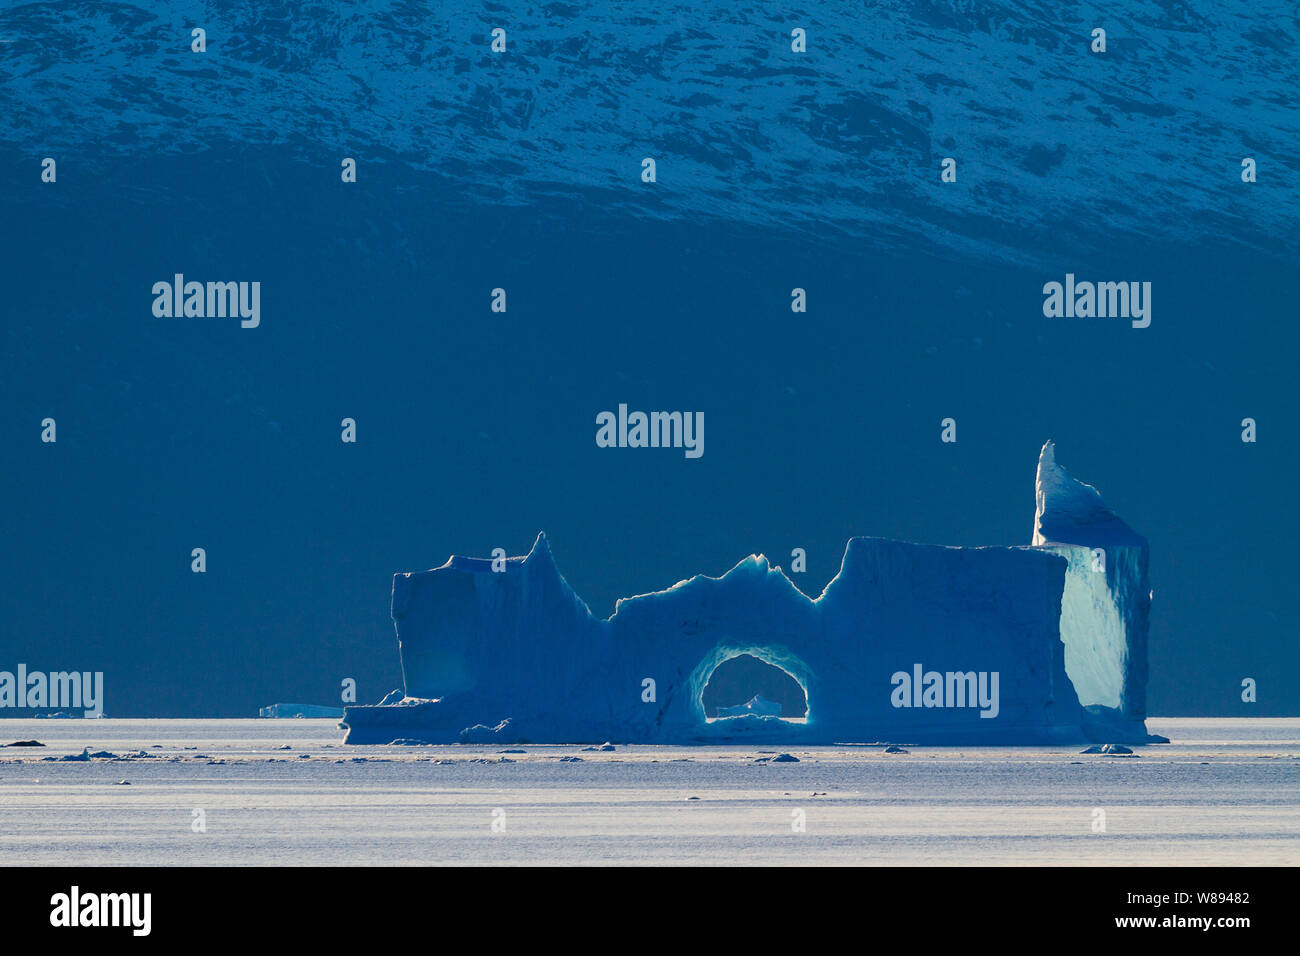 Eine absurde Eisskulptur fängt den schwindenden Licht und ist gegen die Verdunkelung Felswand in Ø Fjord, Grönland Stockfoto